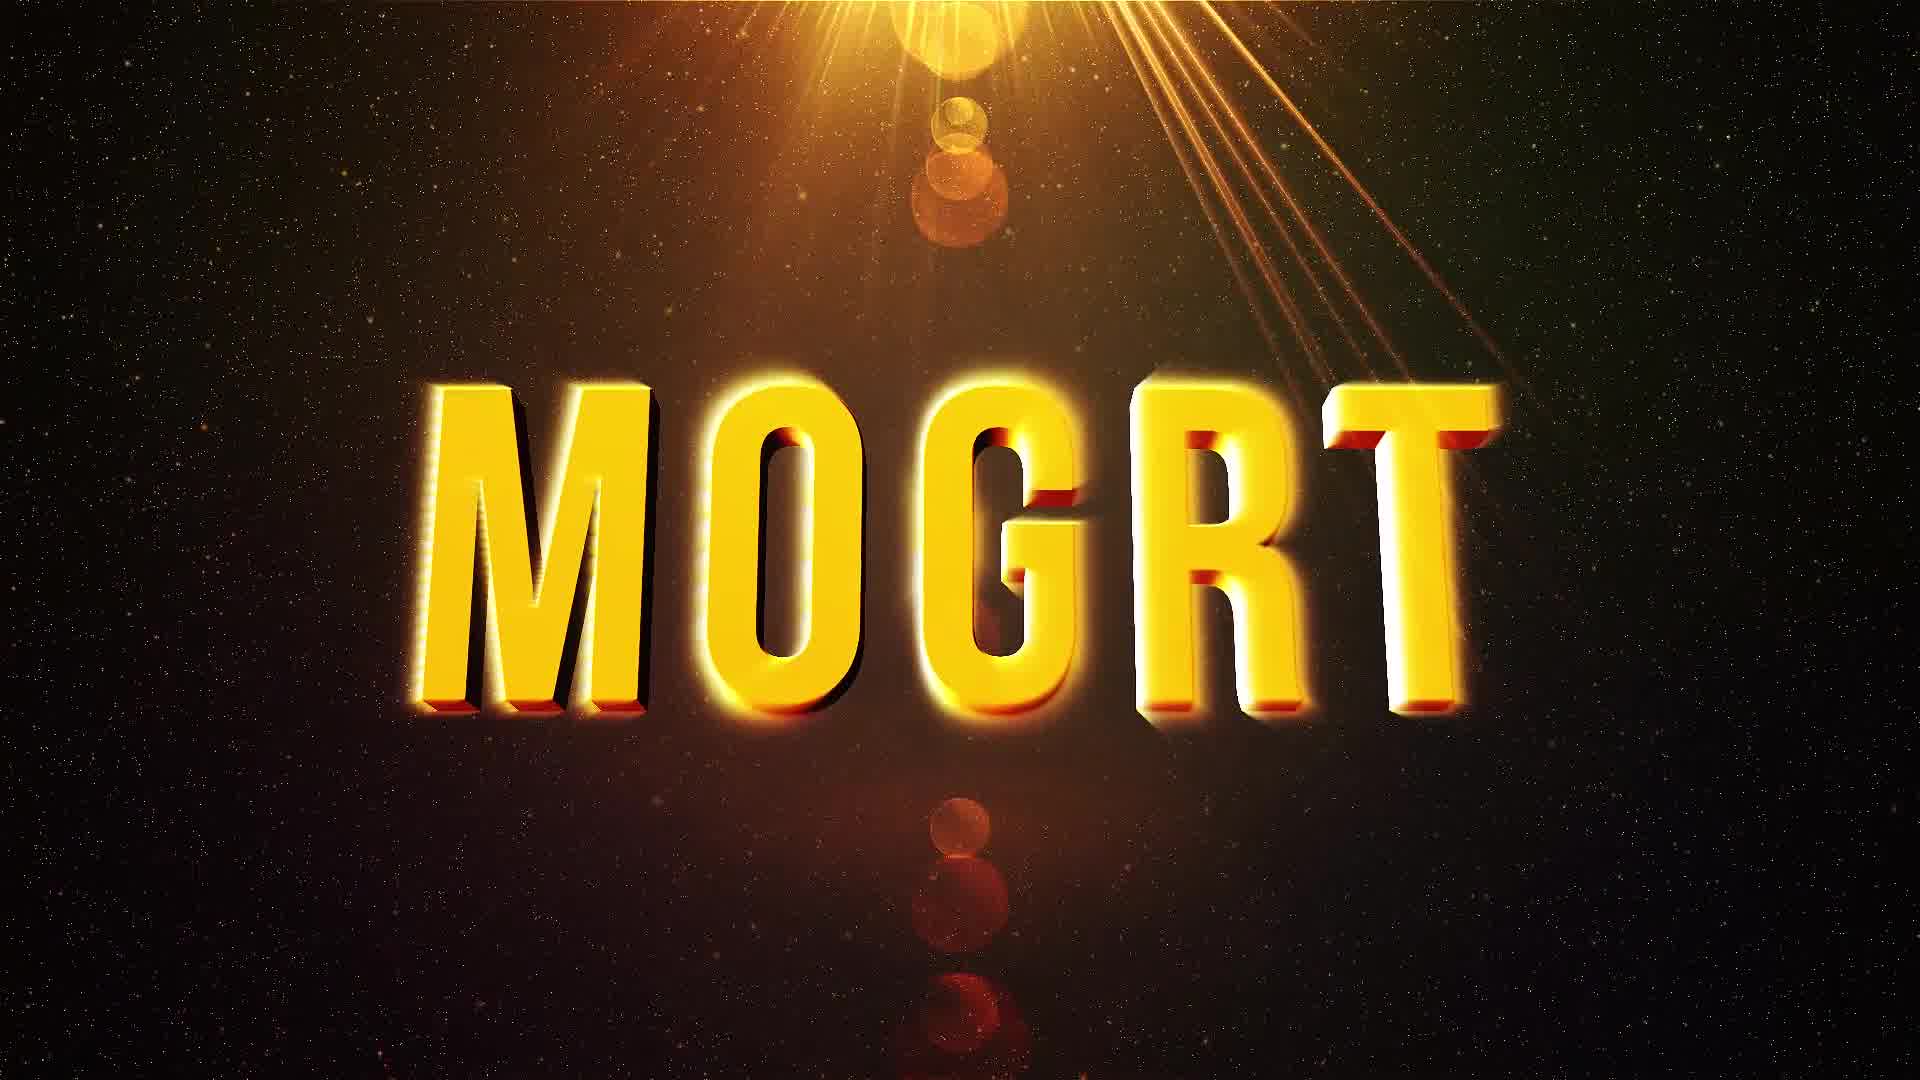 Epic Title Intro (mogrt) Videohive 23516202 Premiere Pro Image 10